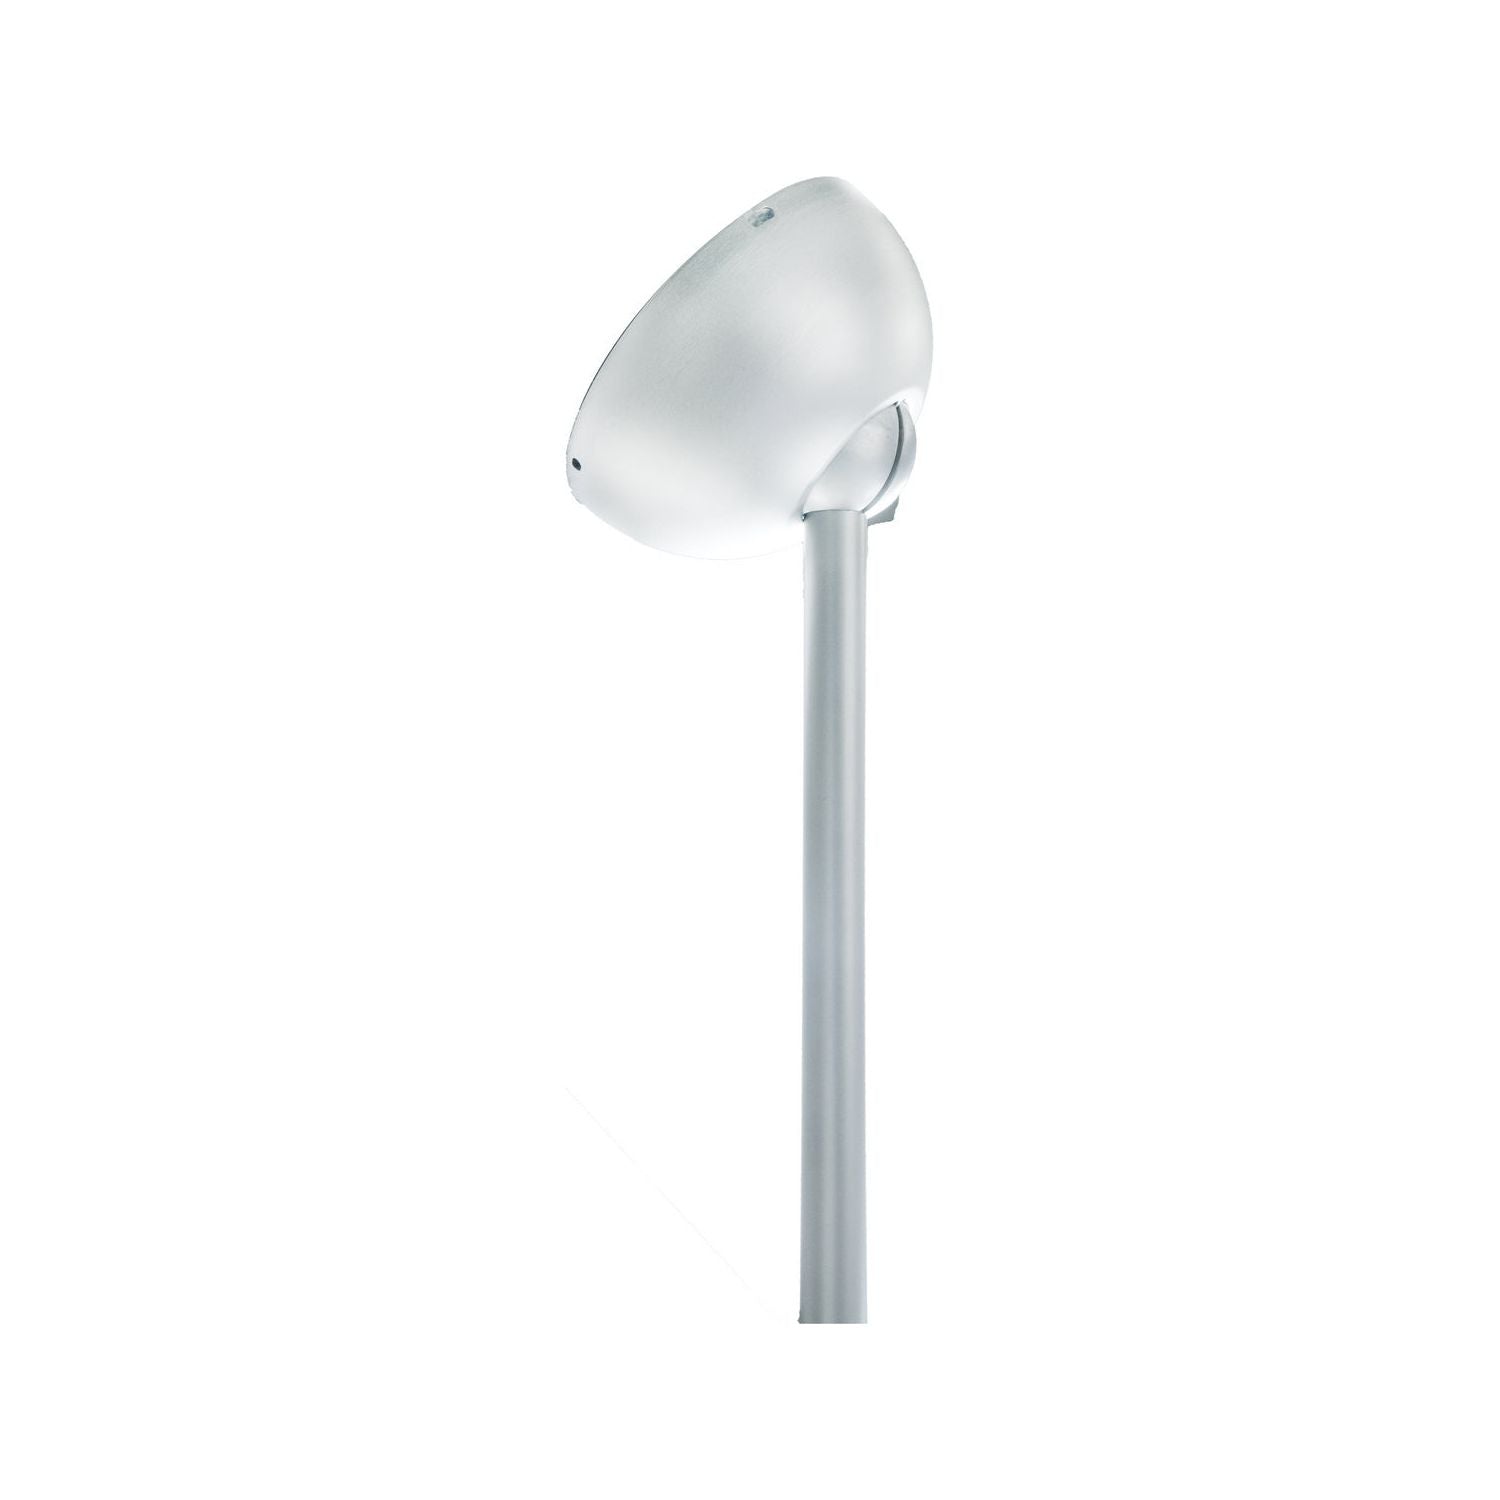 Modern Forms Fans Canada - XF-SCK-BN - Ceiling Fan Slope Ceiling Kit - Fan Accessories - Brushed Nickel